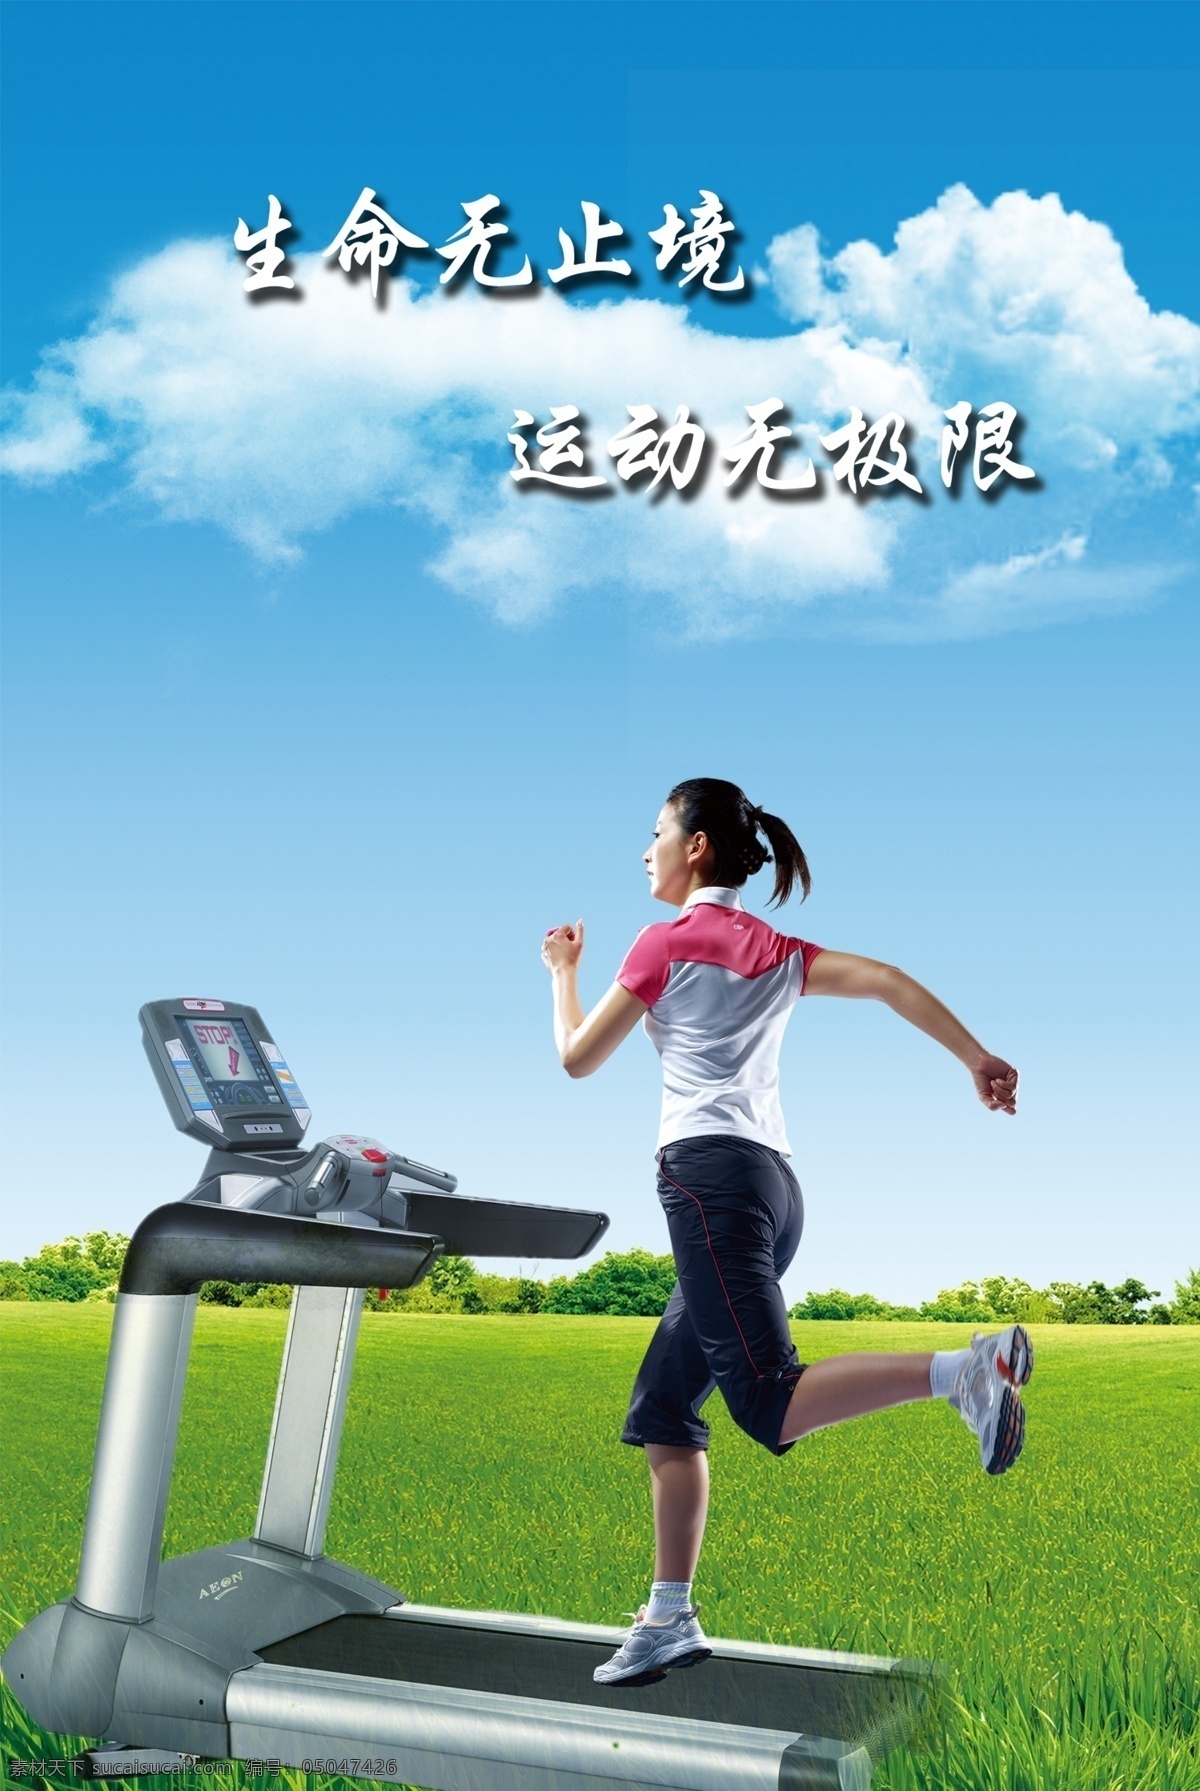 户外健身展板 户外健身 跑步机 蓝天白云 运动女孩 广告设计模板 源文件